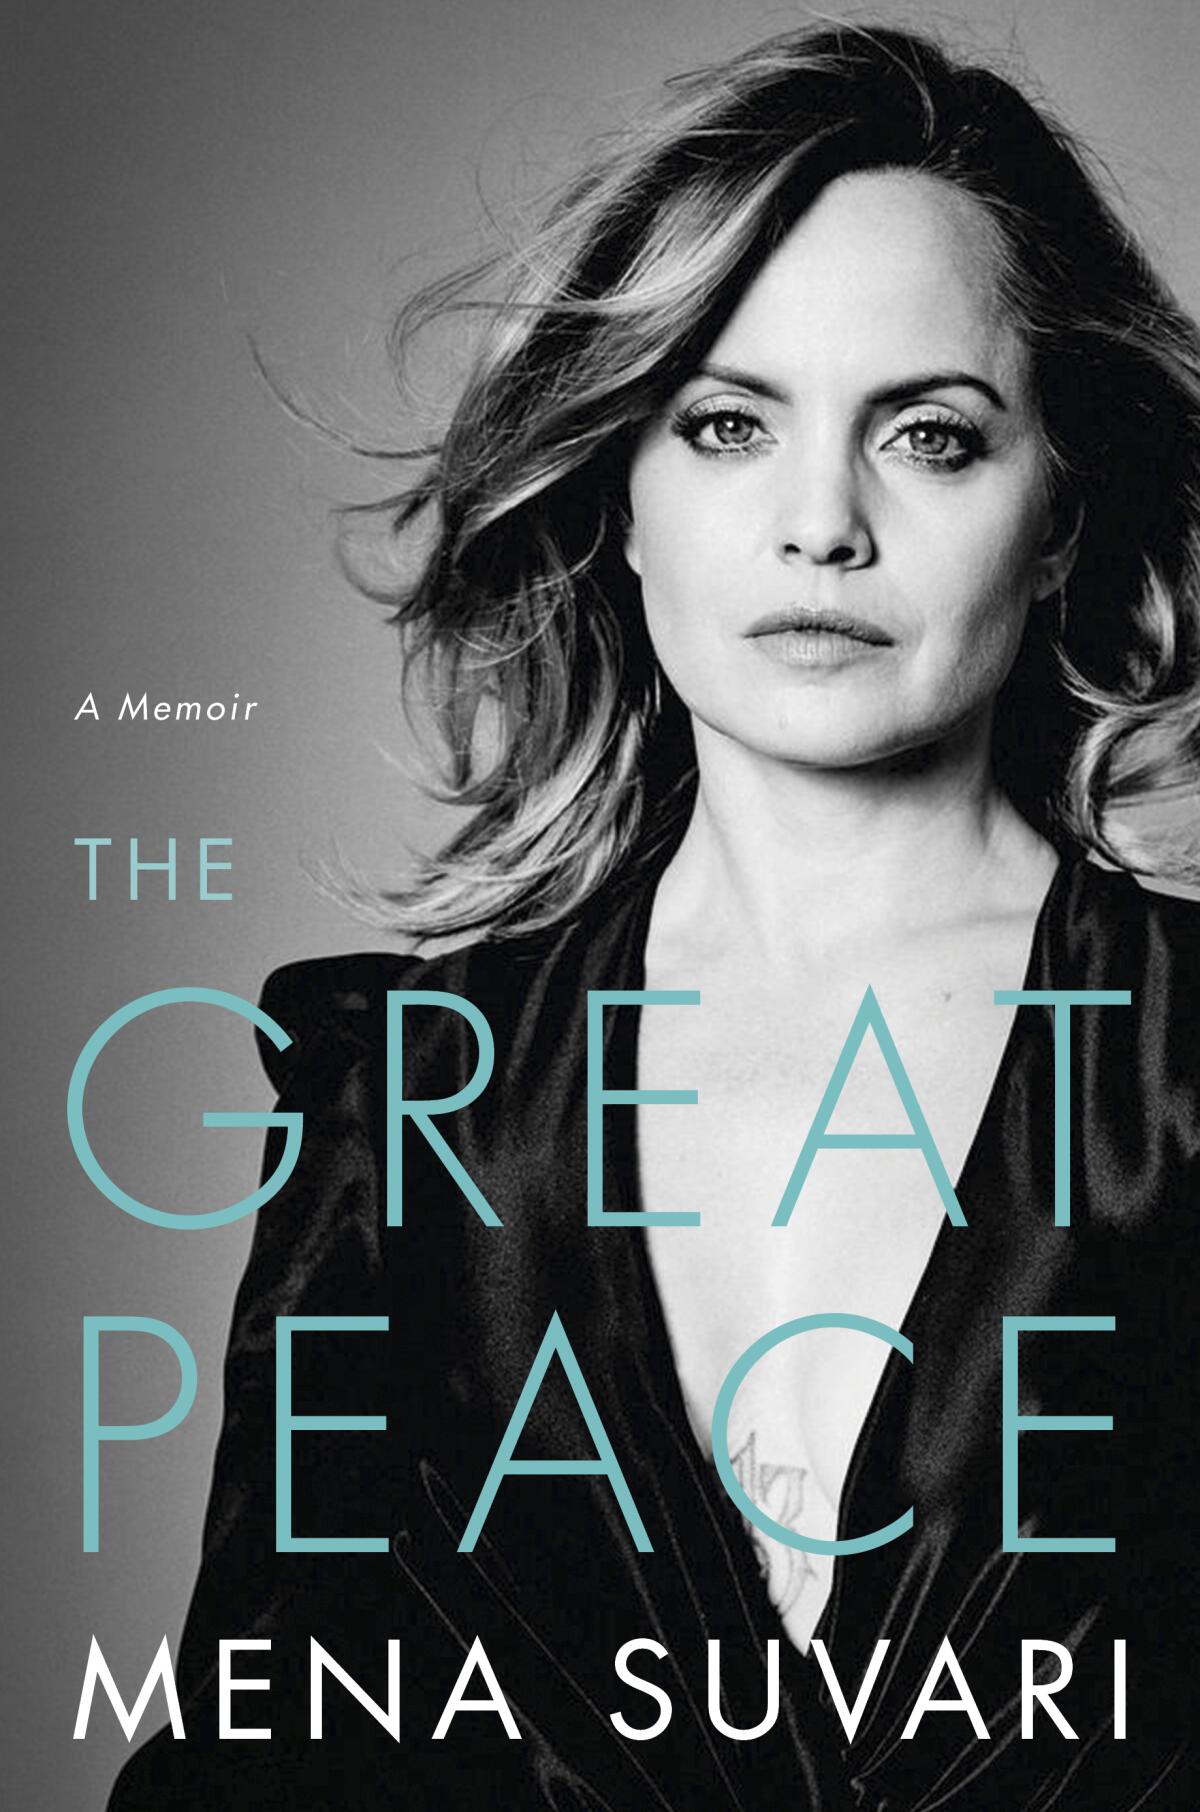 En esta imagen difundida por Hachette Books, la portada del libro de memorias "The Great Peace" de Mena Suvari.